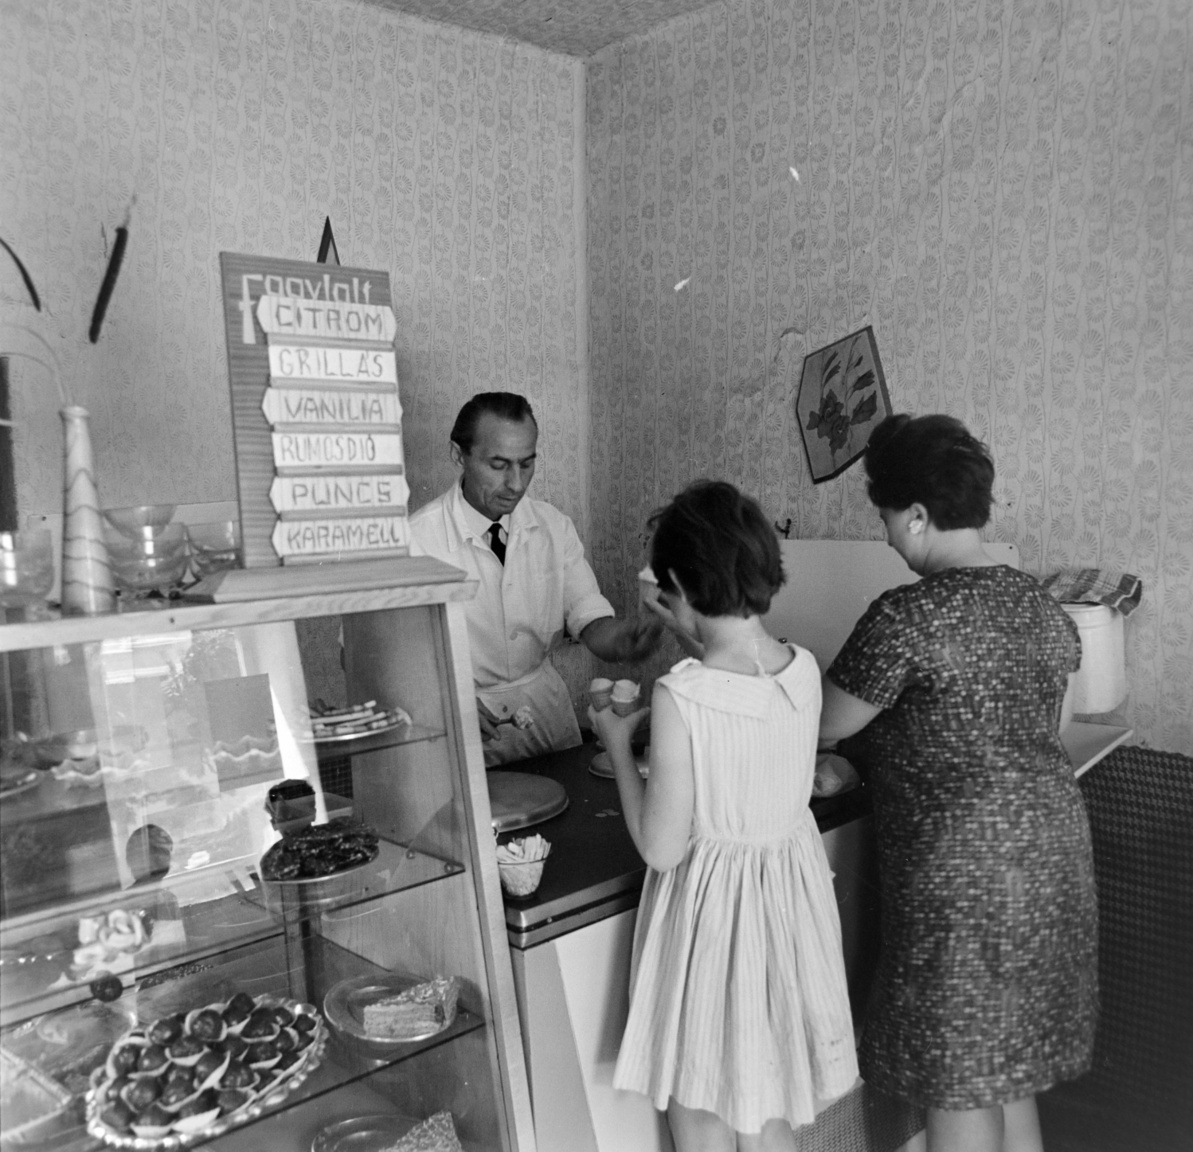 1968 – CukrászdaOrosházán vagyunk, egy cukrászdában. Kicsike az üzlet, ez abból látszik, hogy a kézmosási lehetőséget csak nagy ügyeskedés árán sikerült beszorítani a pult mellé: a víztartály alján csap, alatta pedig tálca a piszkos víz felfogására. Ez csak a KÖJÁL (= Közegészségügyi és Járványügyi Állomás) előírásainak betartása miatt kellett, nyilván ragaszkodtak hozzá, hogy ahol élelmiszer-fogyasztás történik, ott kézmosási lehetőségnek kell lennie. (És vajon vécé volt?) A fagylaltkínálat mai szemmel nézve bizony egyoldalú, nincsen semmilyen gyümölcsös (a citromosat nem lehet annak nevezni), a felsorolt fagylaltok ugyanannak a tejszínes alapnak különböző ízesítései. Ettől még finomak lehettek, én a rumosdiót választottam volna. A „grillás” szónak „s”-sel való írása általános volt (ahogy a „masszás” szónak is, bár a franciás „grillázs”, „masszázs” helyesebbnek számított). A víztartály tetején csíkos kéztörlő.